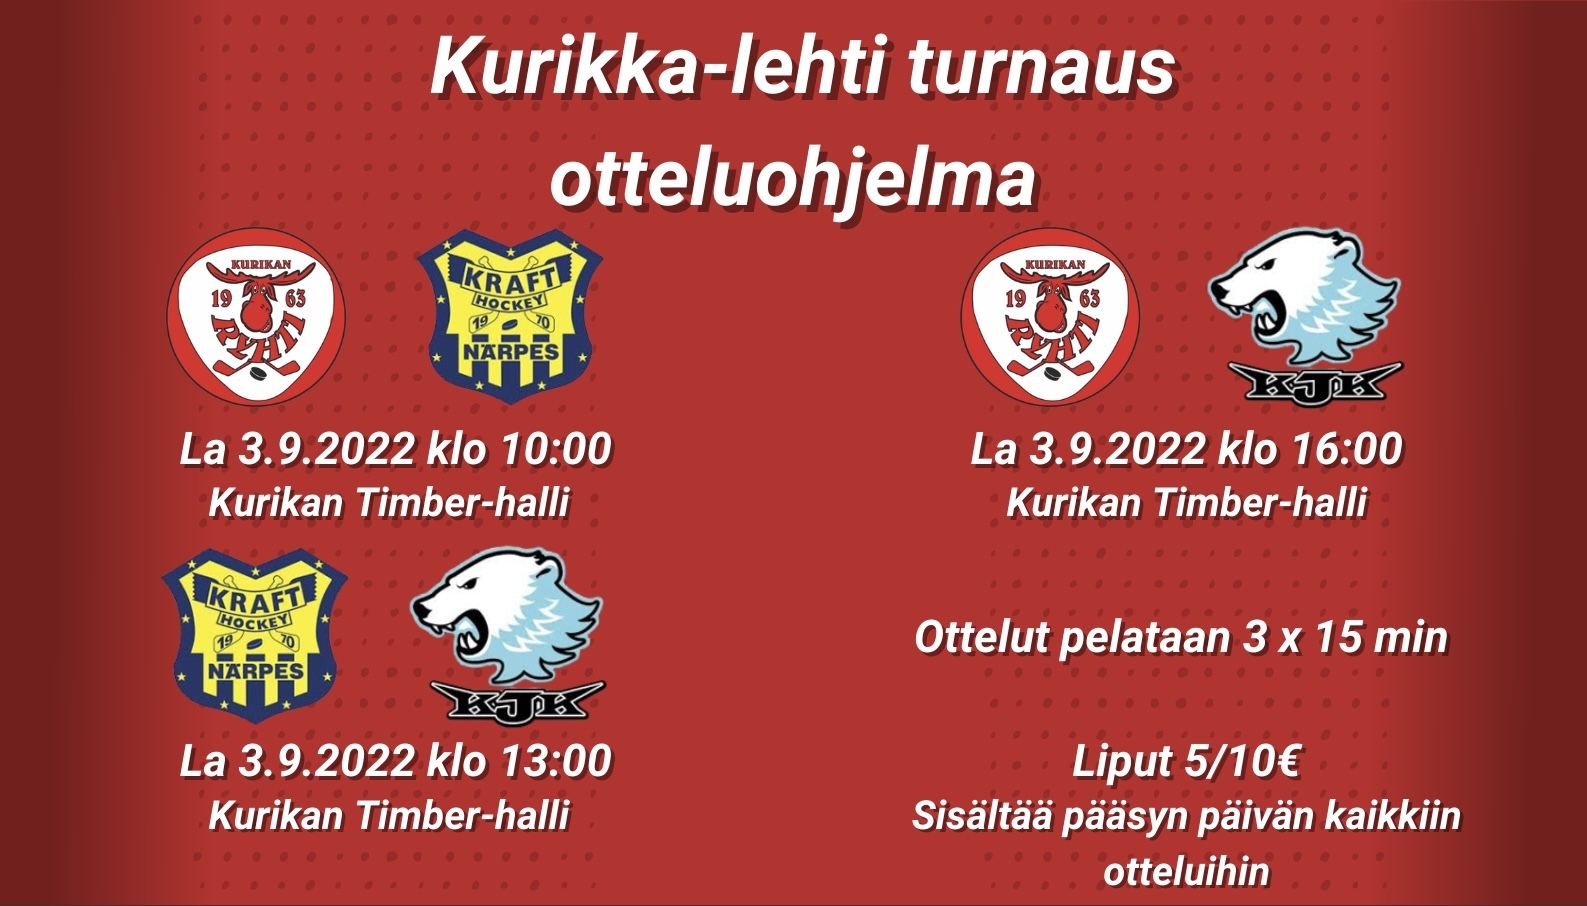 Kurikka-lehti turnaus 3.9.2022